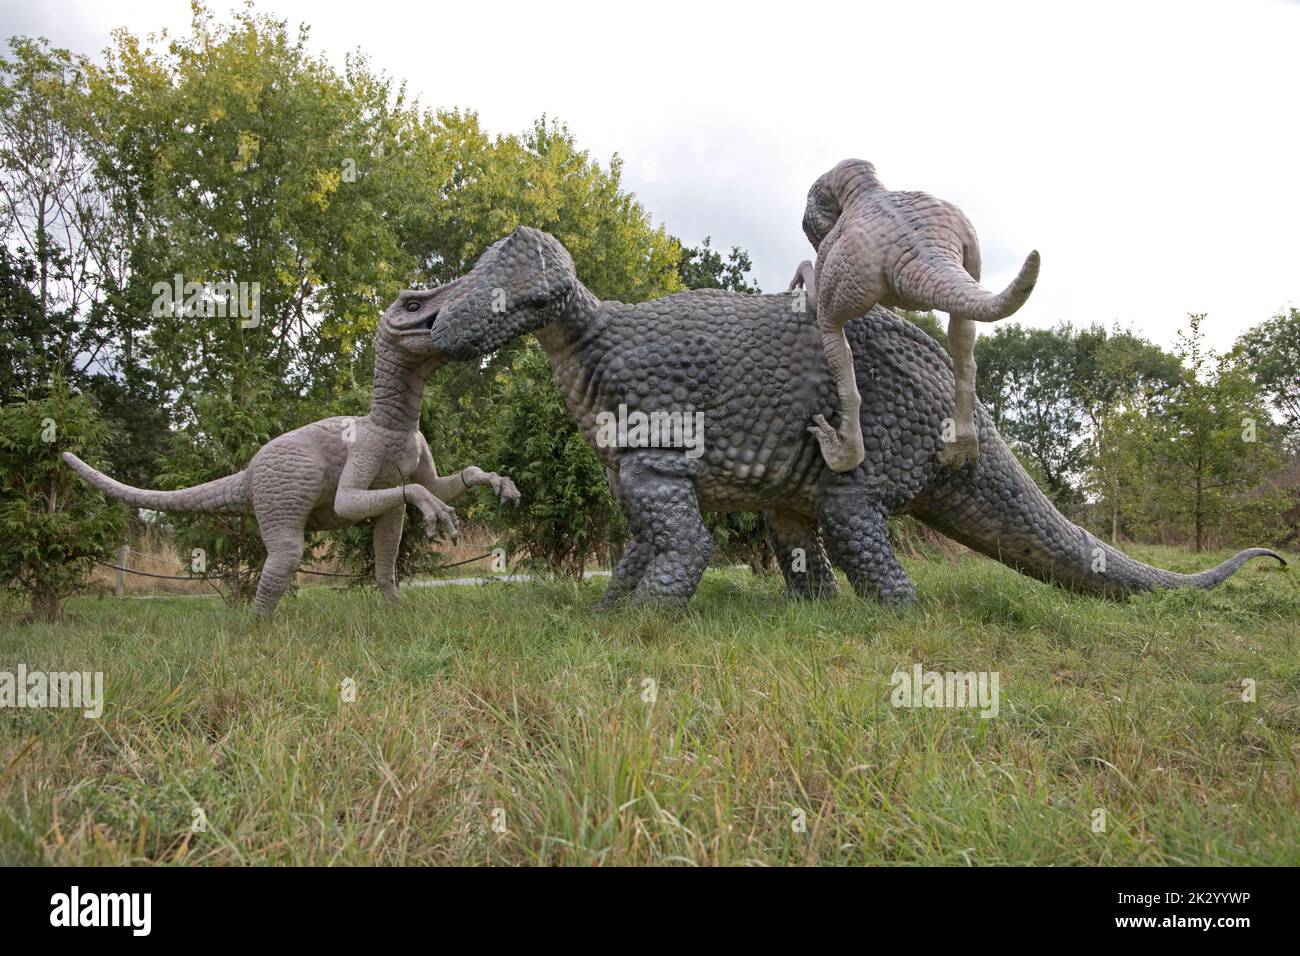 Lifesize-Modelle von Deinonychus-Theropoden, die pflanzenfressende Tenontosaurus All Things Wild, Honeybourne, Großbritannien, befestigen Stockfoto